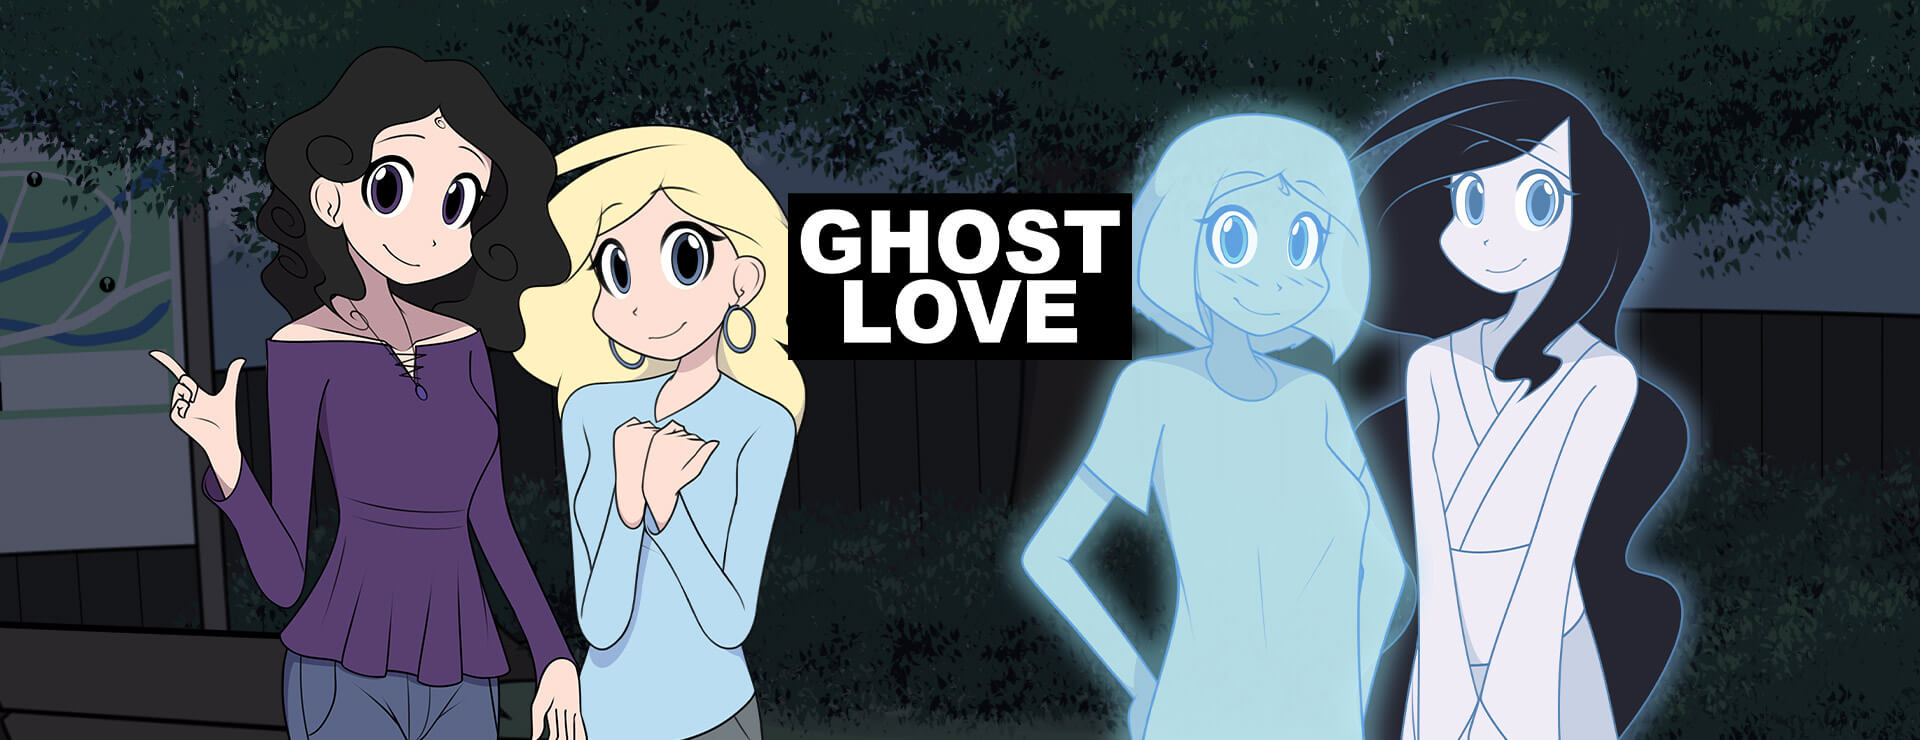 Ghost Love - Roman Visuel Jeu